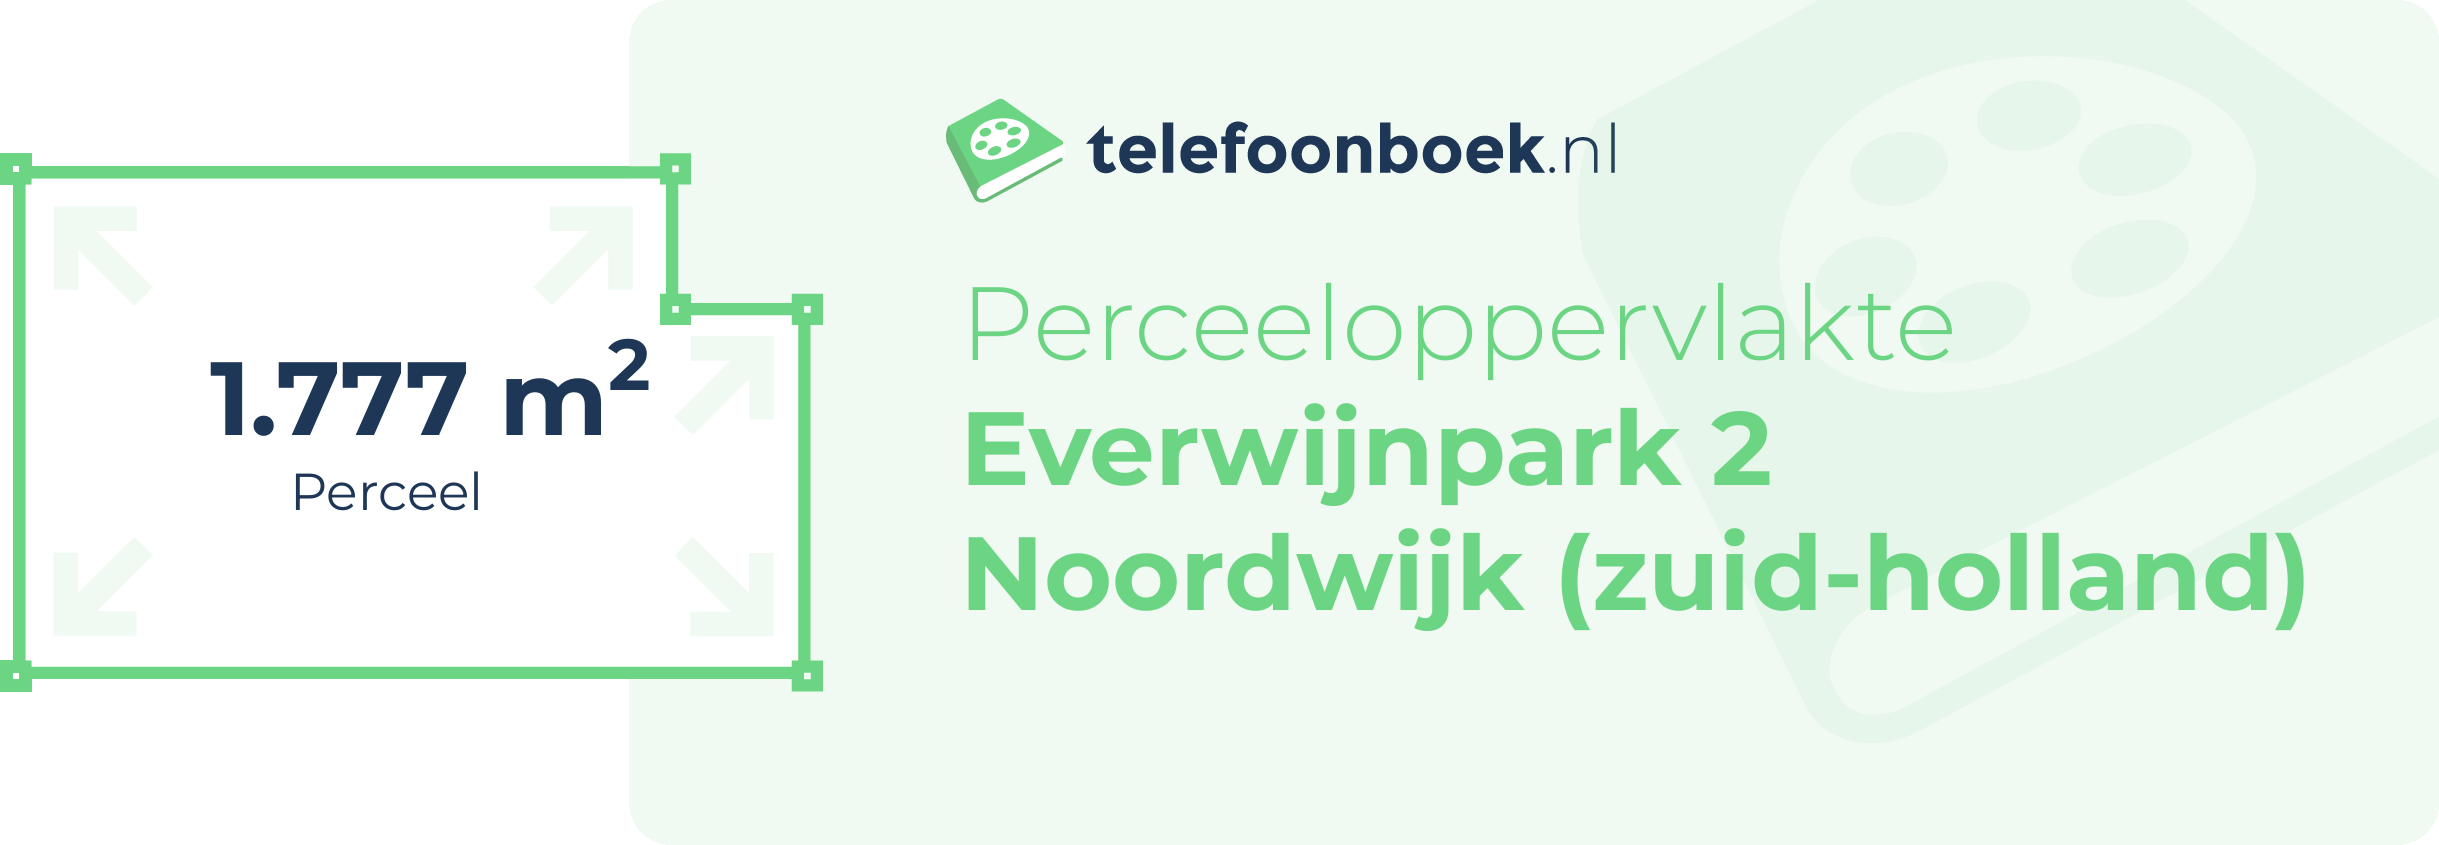 Perceeloppervlakte Everwijnpark 2 Noordwijk (Zuid-Holland)